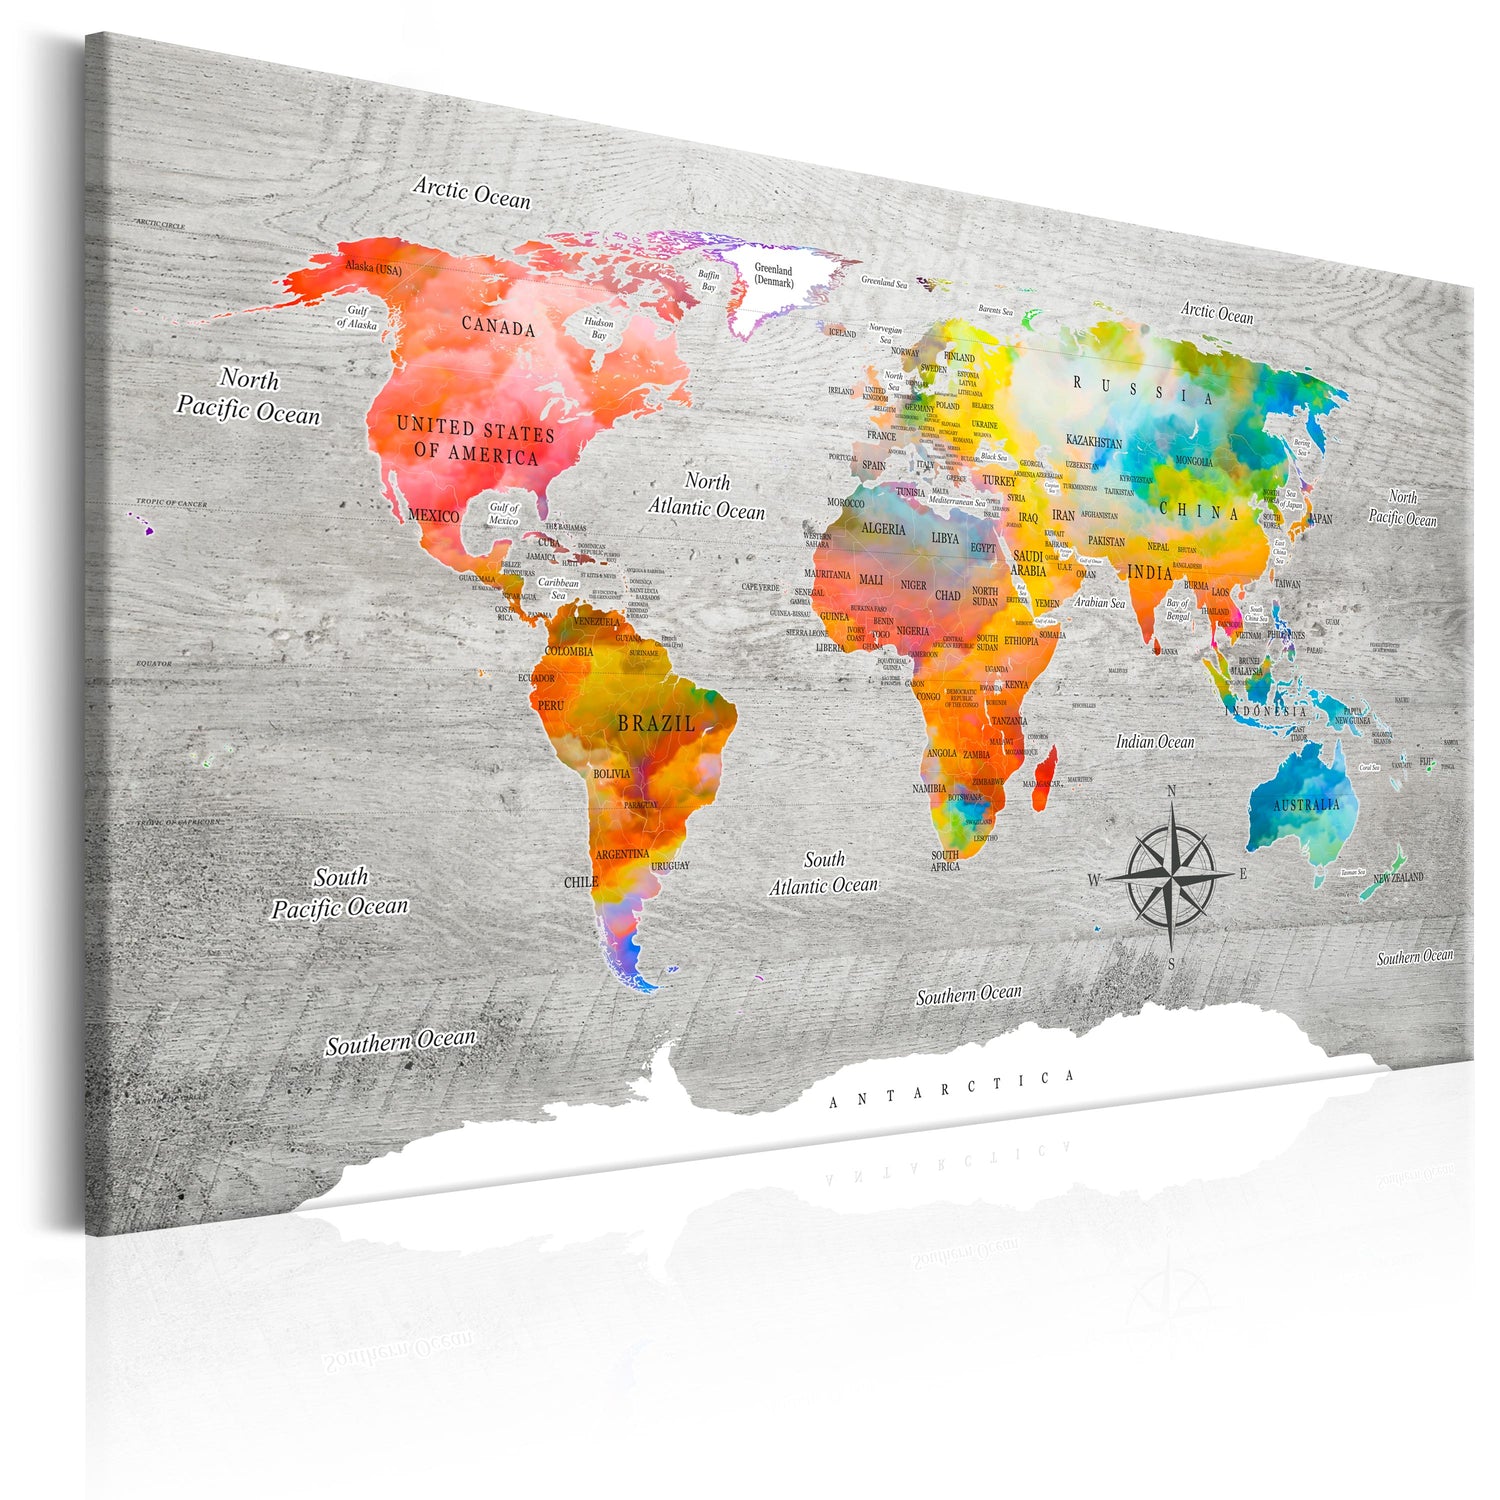 Weltkarte als Leinwandbild - Wandbild - Multicolored Travels